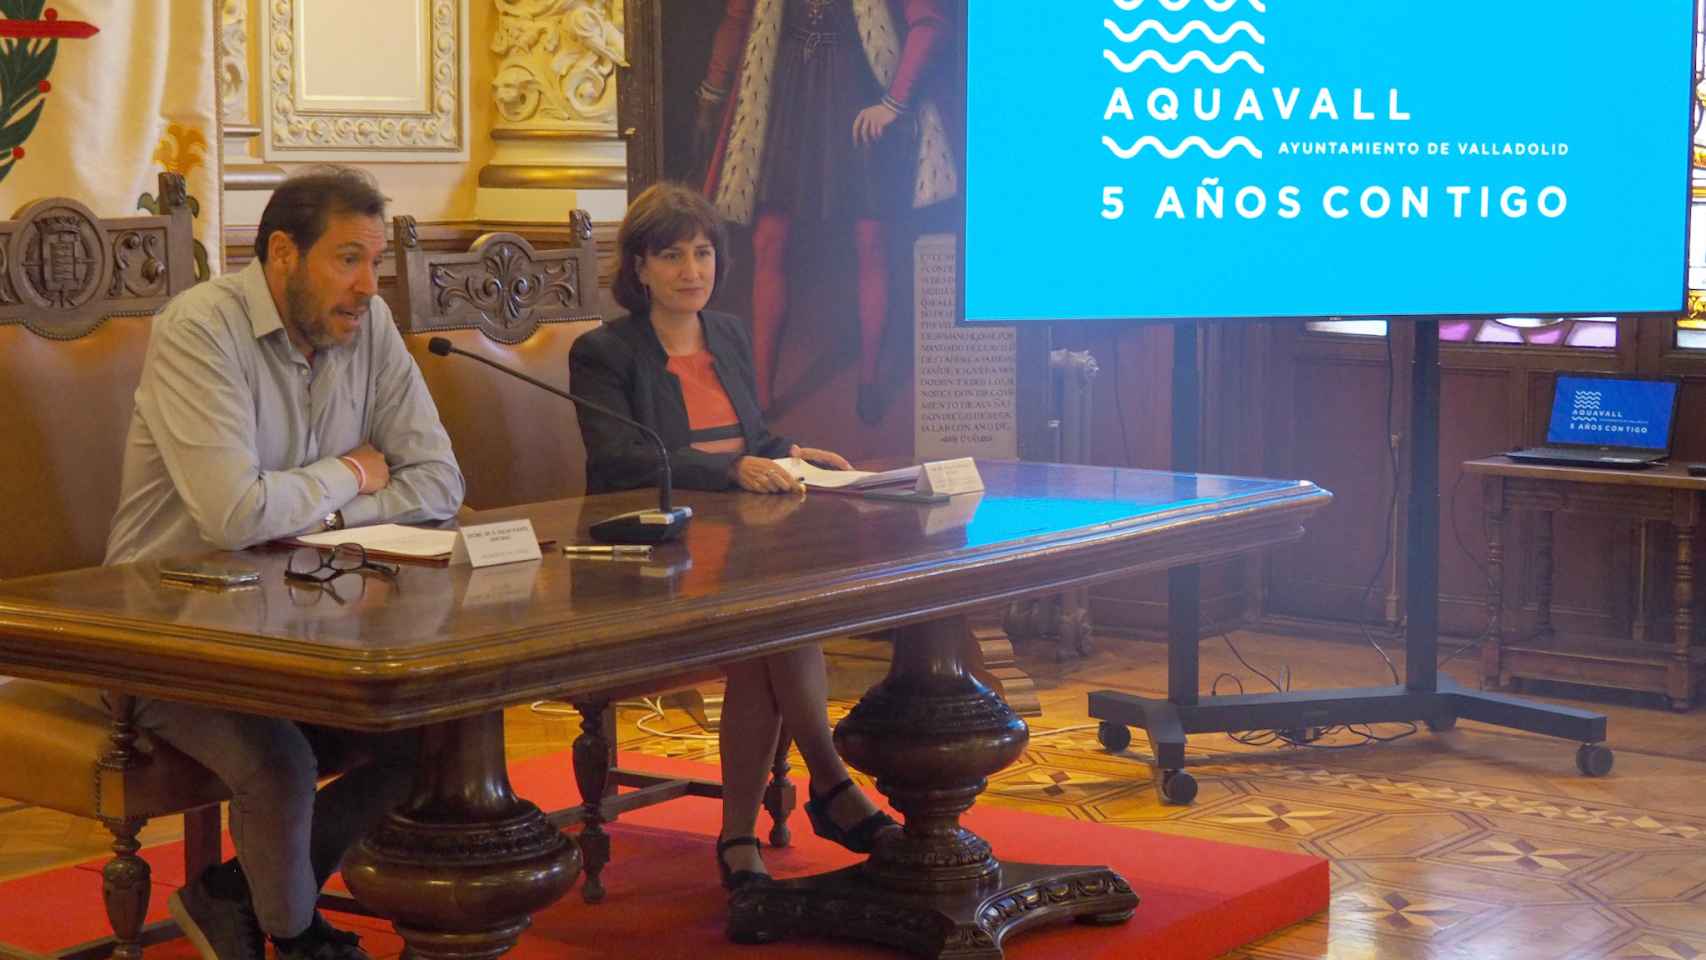 Aquavall cumple cinco años y el Ayuntamiento de Valladolid hace balance